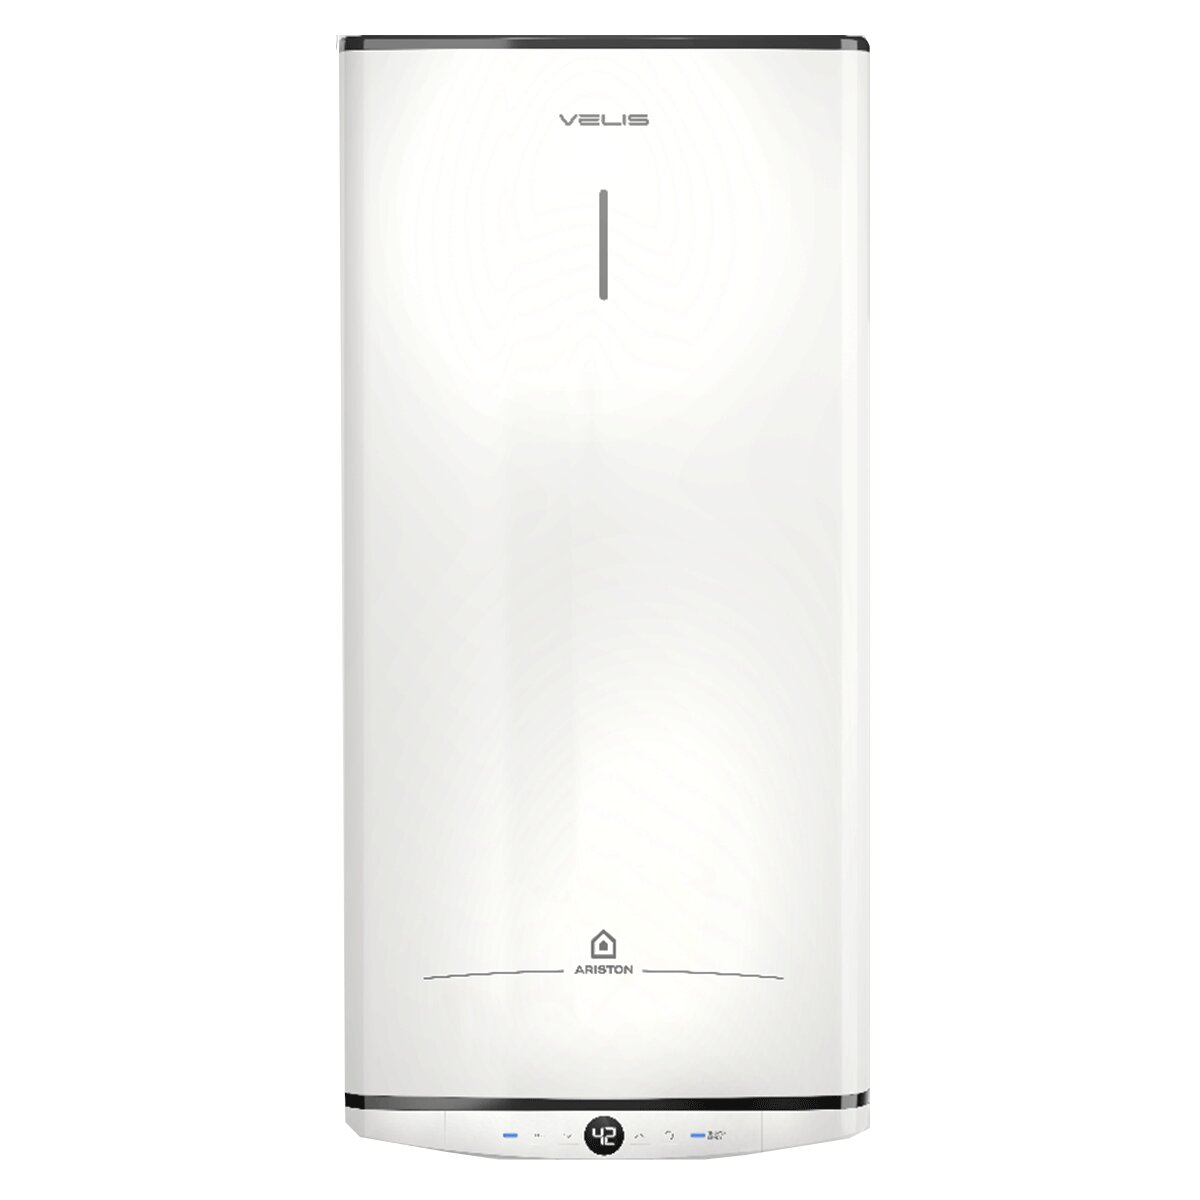 Ariston Velis Pro Vertical/Horizontal 80 Liter electric water heater